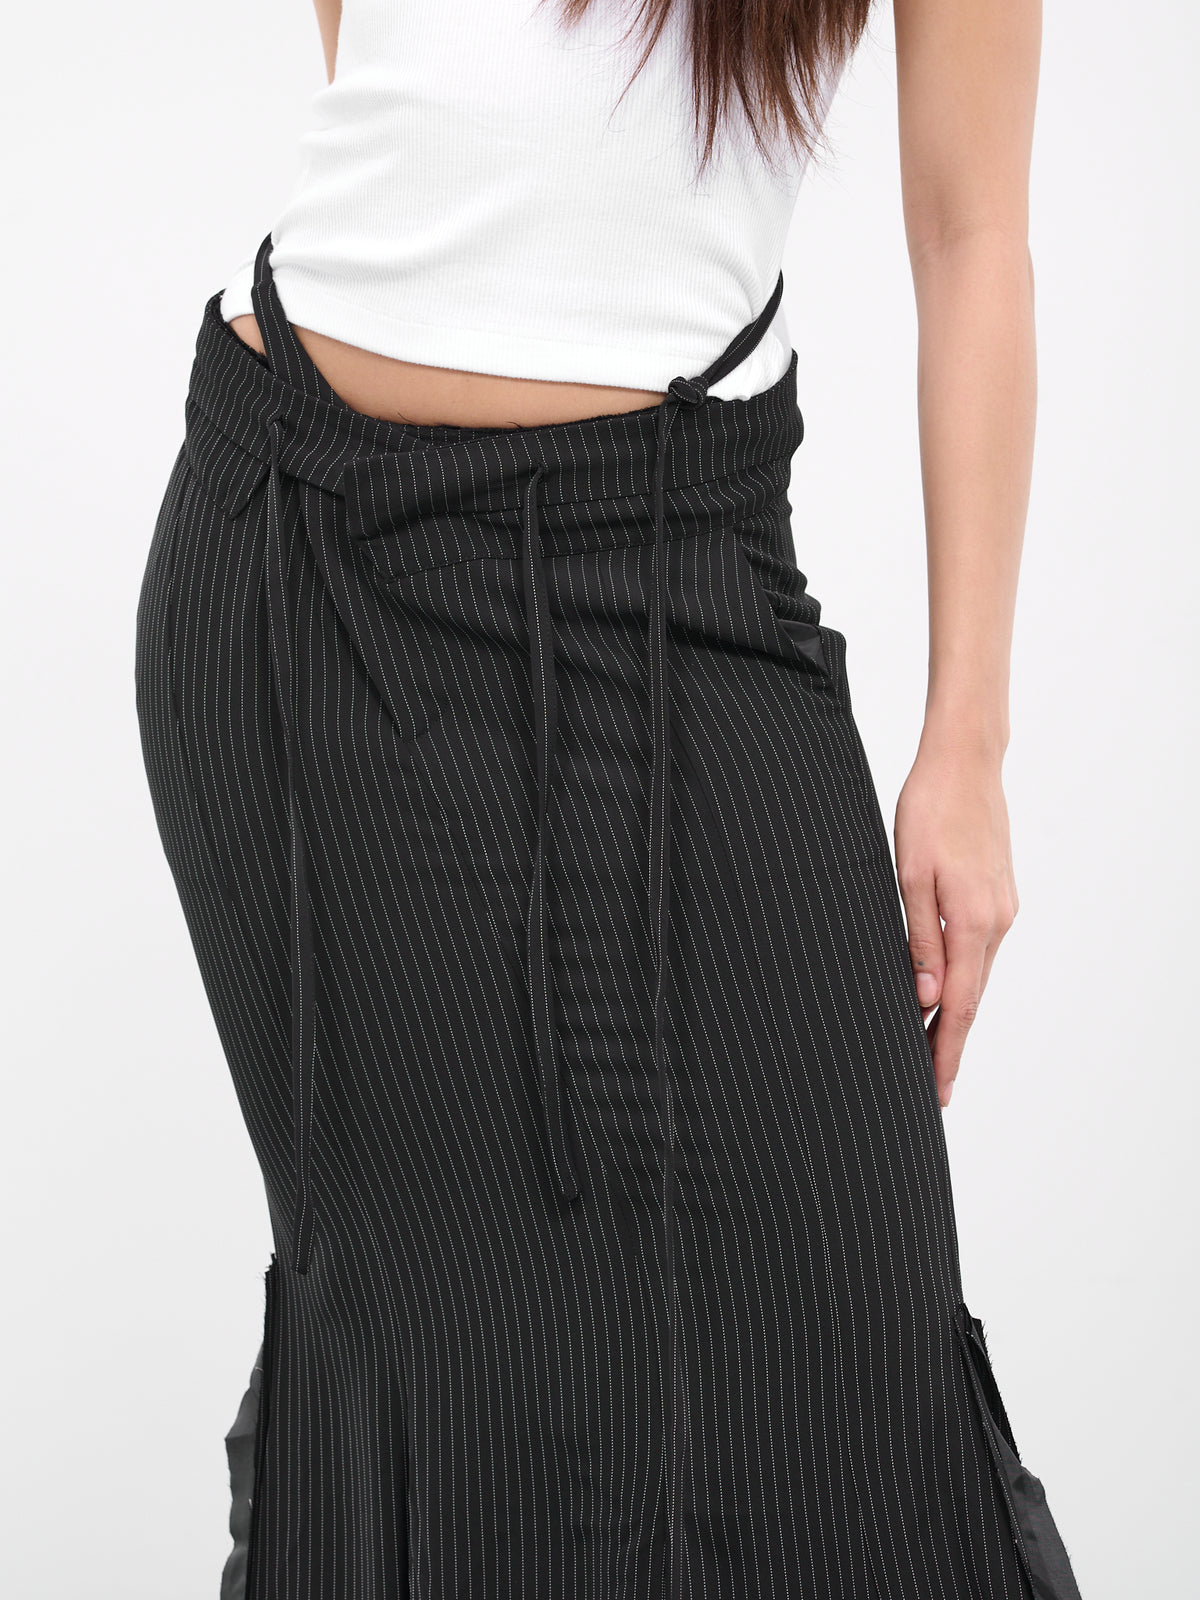 Mermaid Pinstripe Suit Skirt (2304201-BLACK-PINSTRIPE)